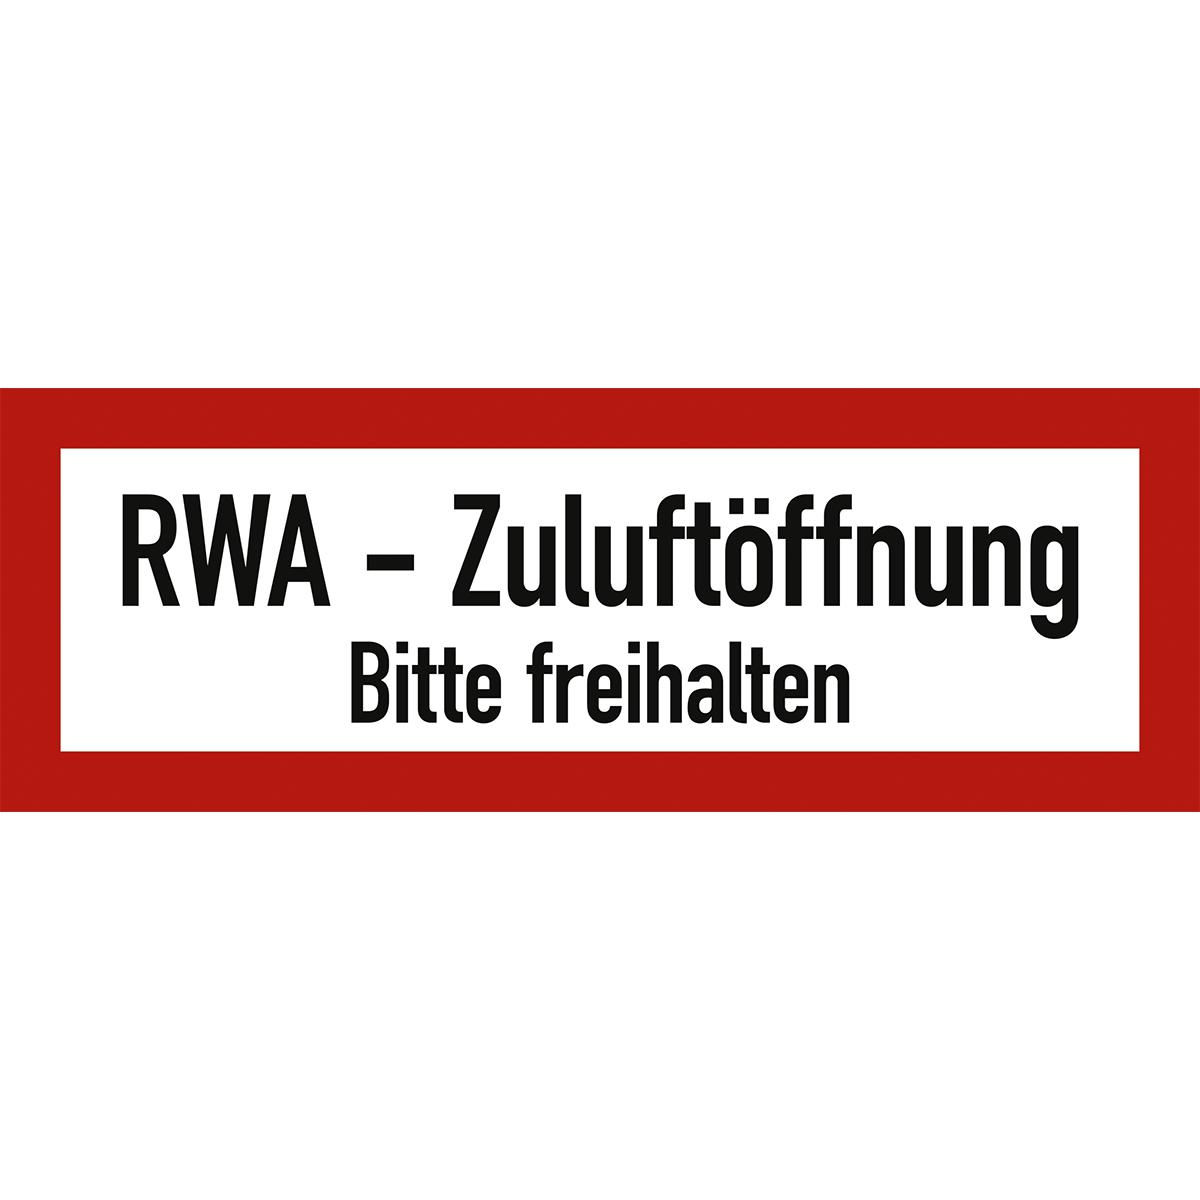 Hinweisschild mit dem Text: RWA - Zuluftöffnung bitte freihalten